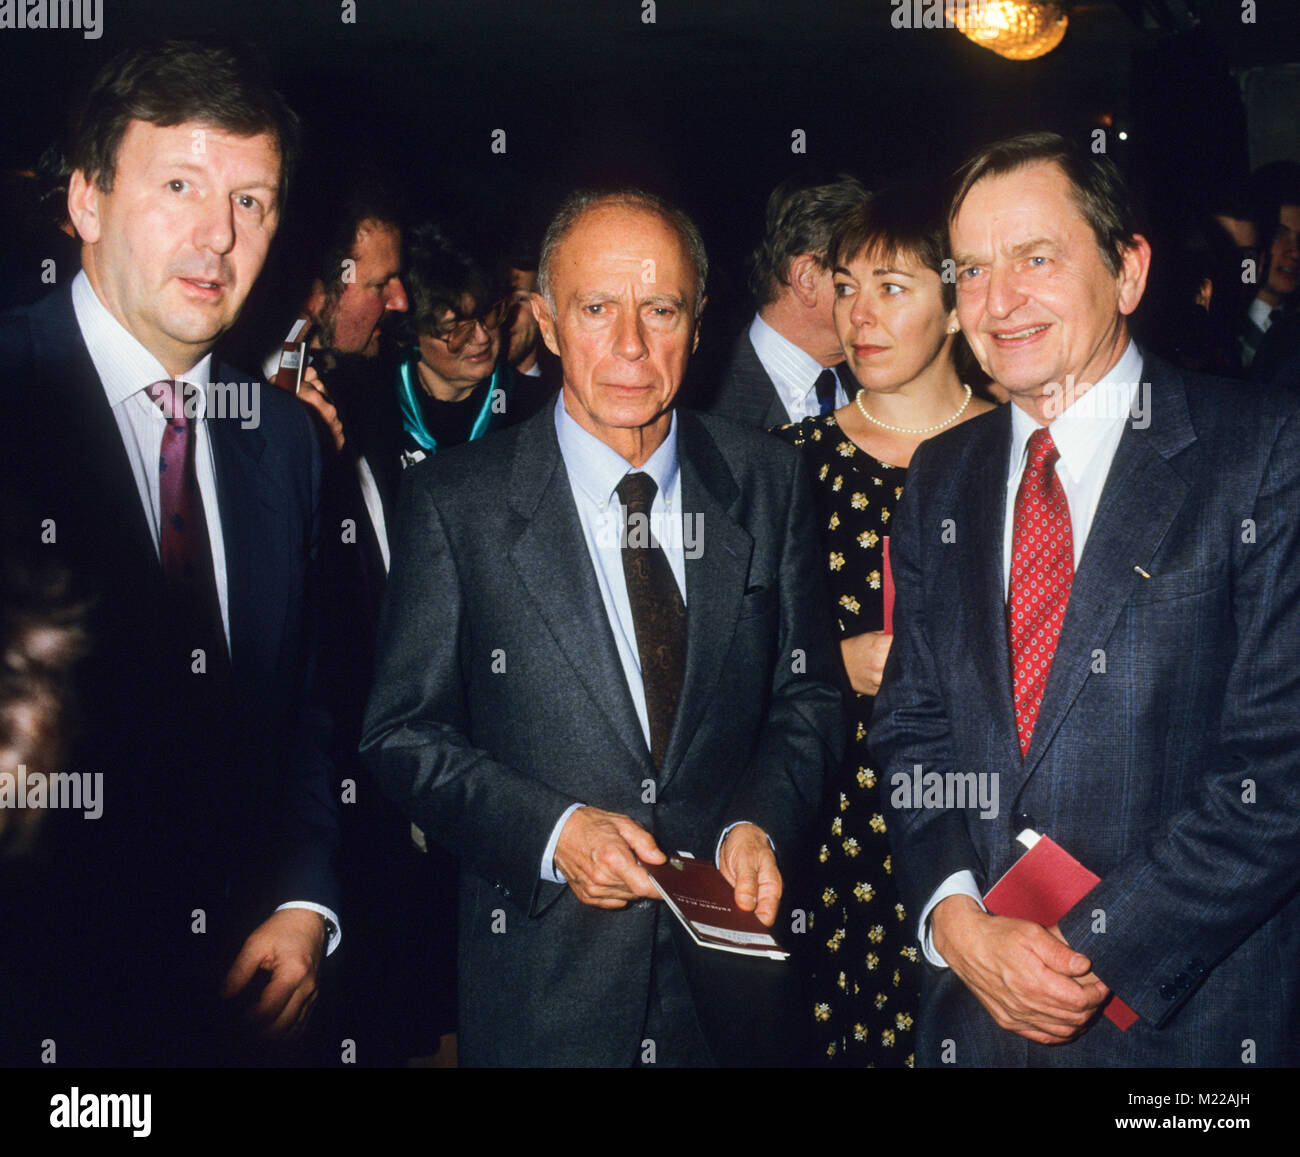 CLAUDE SIMON auteur français, Lauréat du Prix Nobel 1985 en conversation avec le l'ancien premier ministre Olof Palme et le directeur de l'e Dramatique Royal Banque D'Images